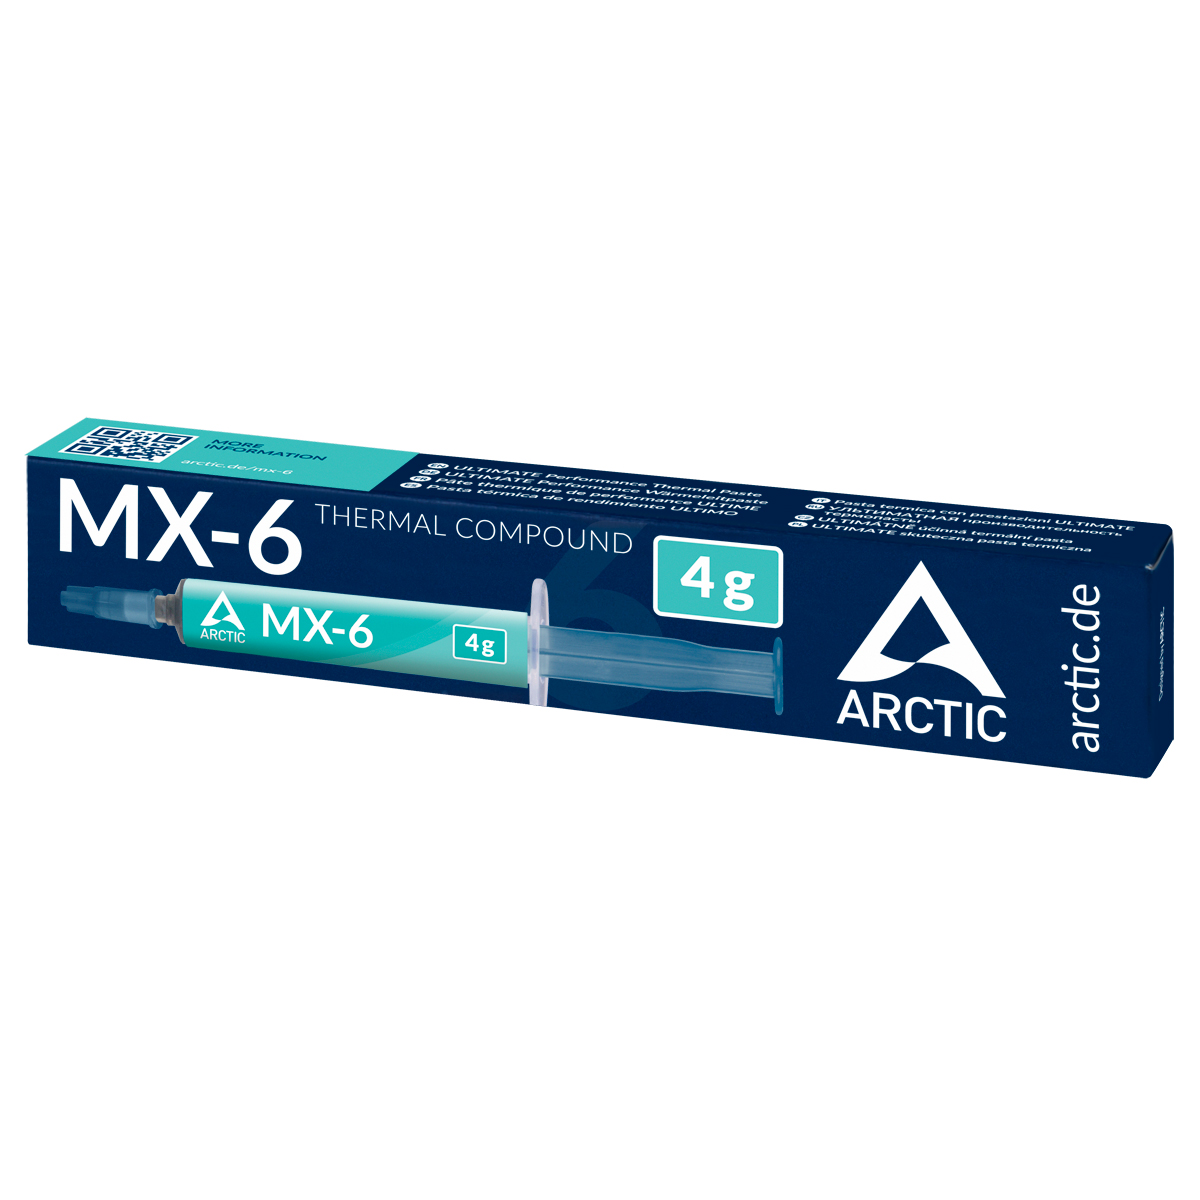 ARCTIC MX-6, review completa en español